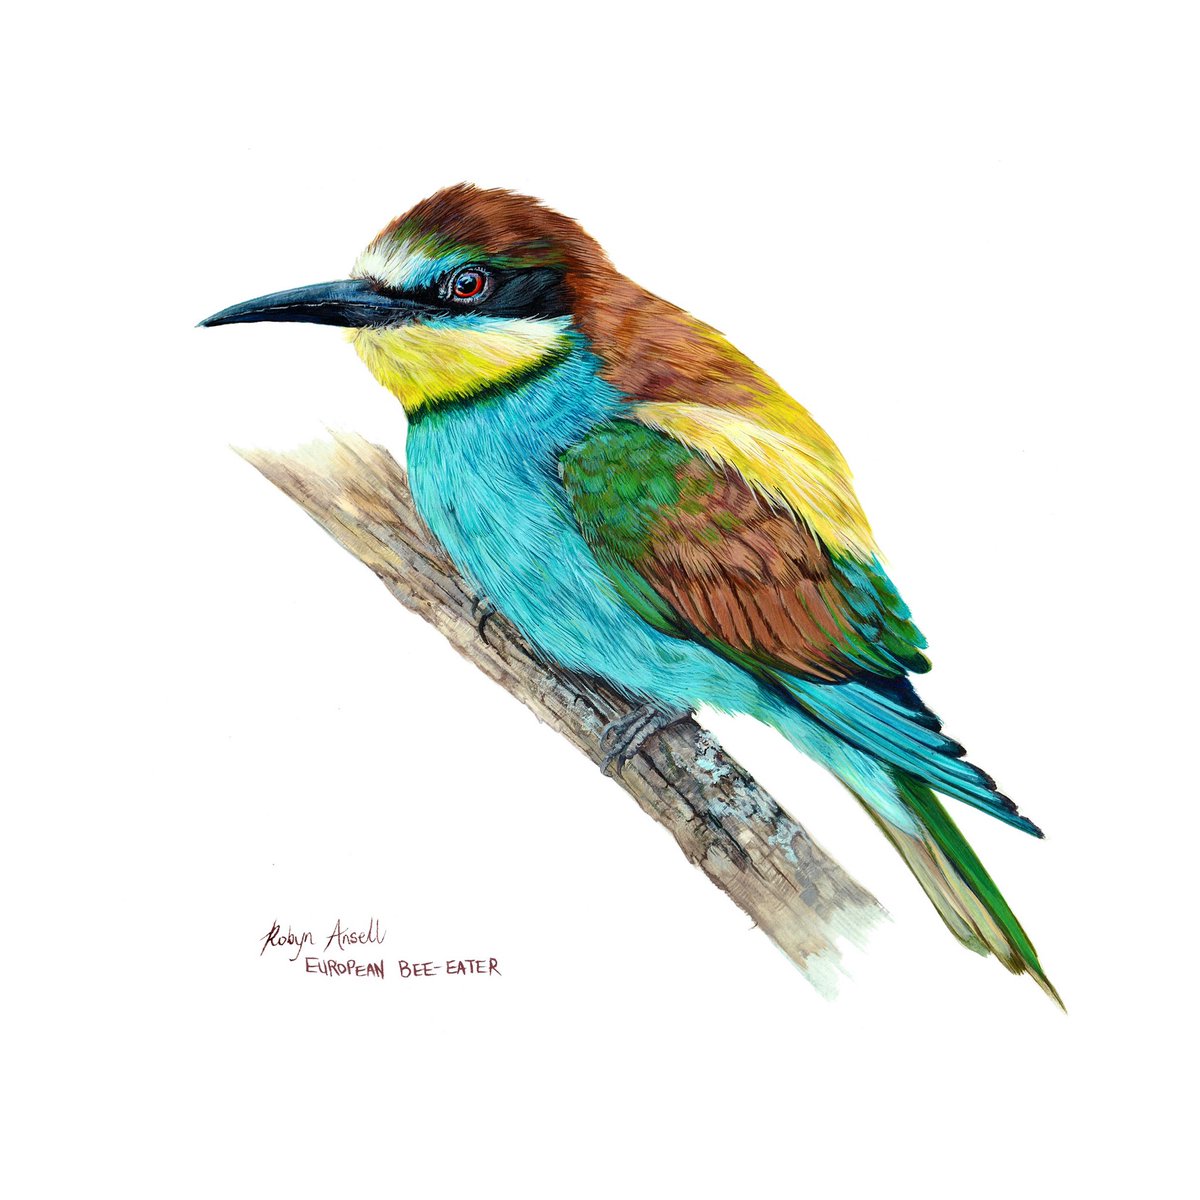 New painting! 🎨 
European Bee-Eater 
A4 (Acrylic on paper)
#artist #myart #birdart #beeeater #ArtOfTheDay #art #artwork #birds #europeanbeeeater #BirdTwitter #TwitterNatureCommunity #birding #southafricanartist #ArtistOnTwitter #natureart #robynansellart #newpainting